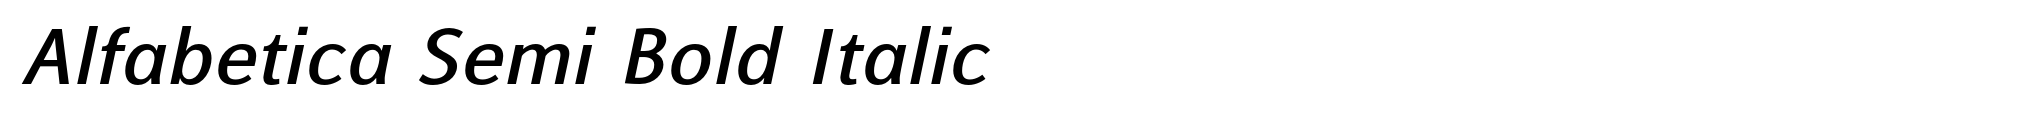 Alfabetica Semi Bold Italic image